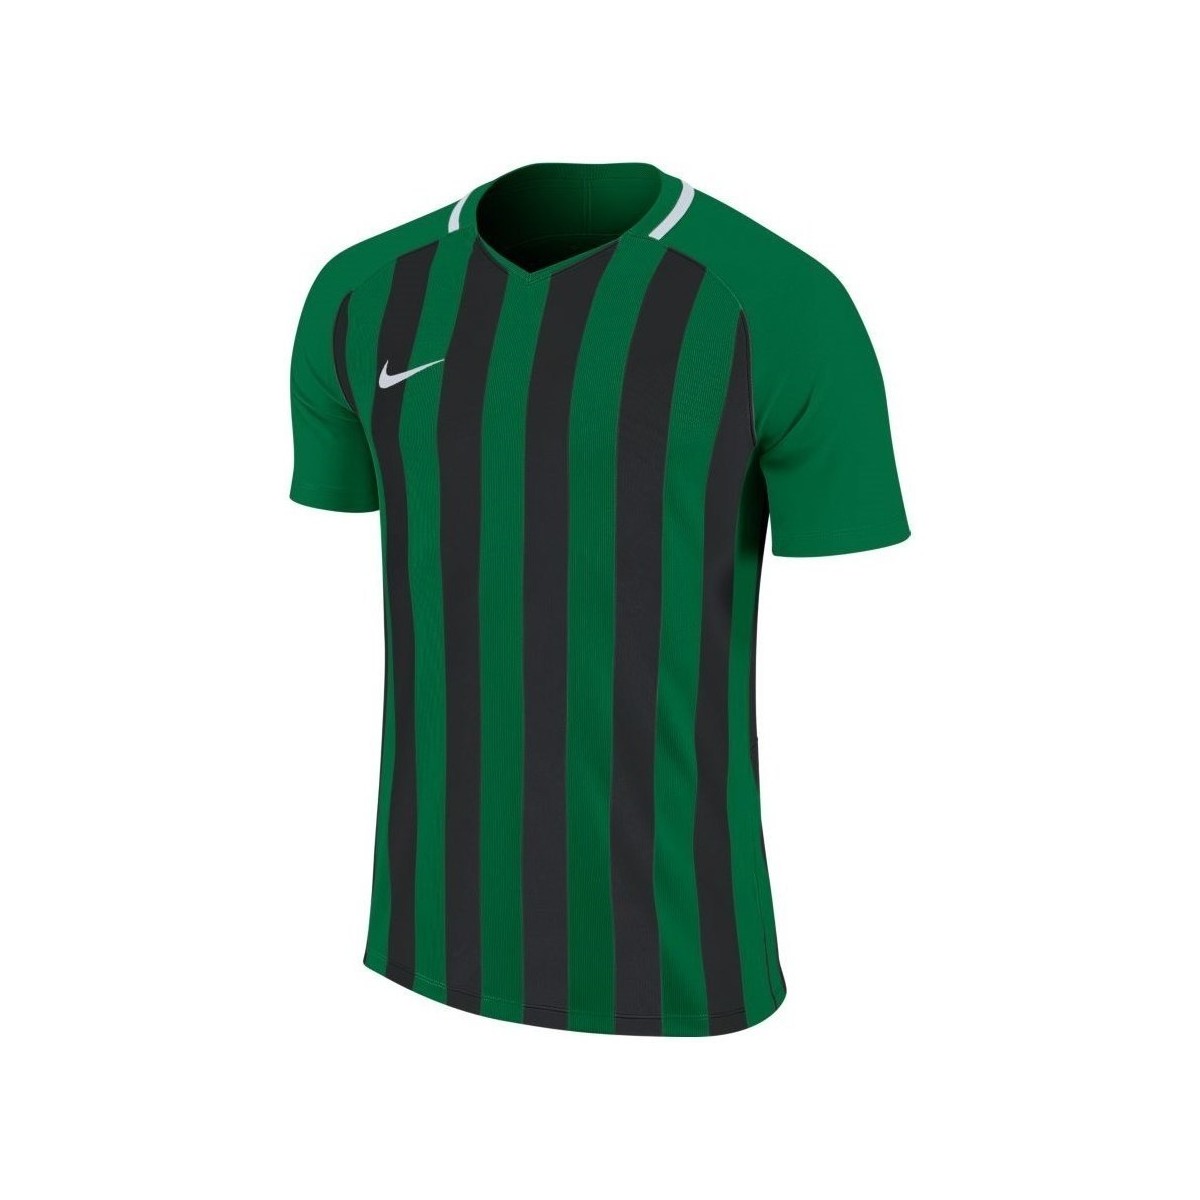 vaatteet Miehet Lyhythihainen t-paita Nike Striped Division Iii Jsy Mustat, Vihreät